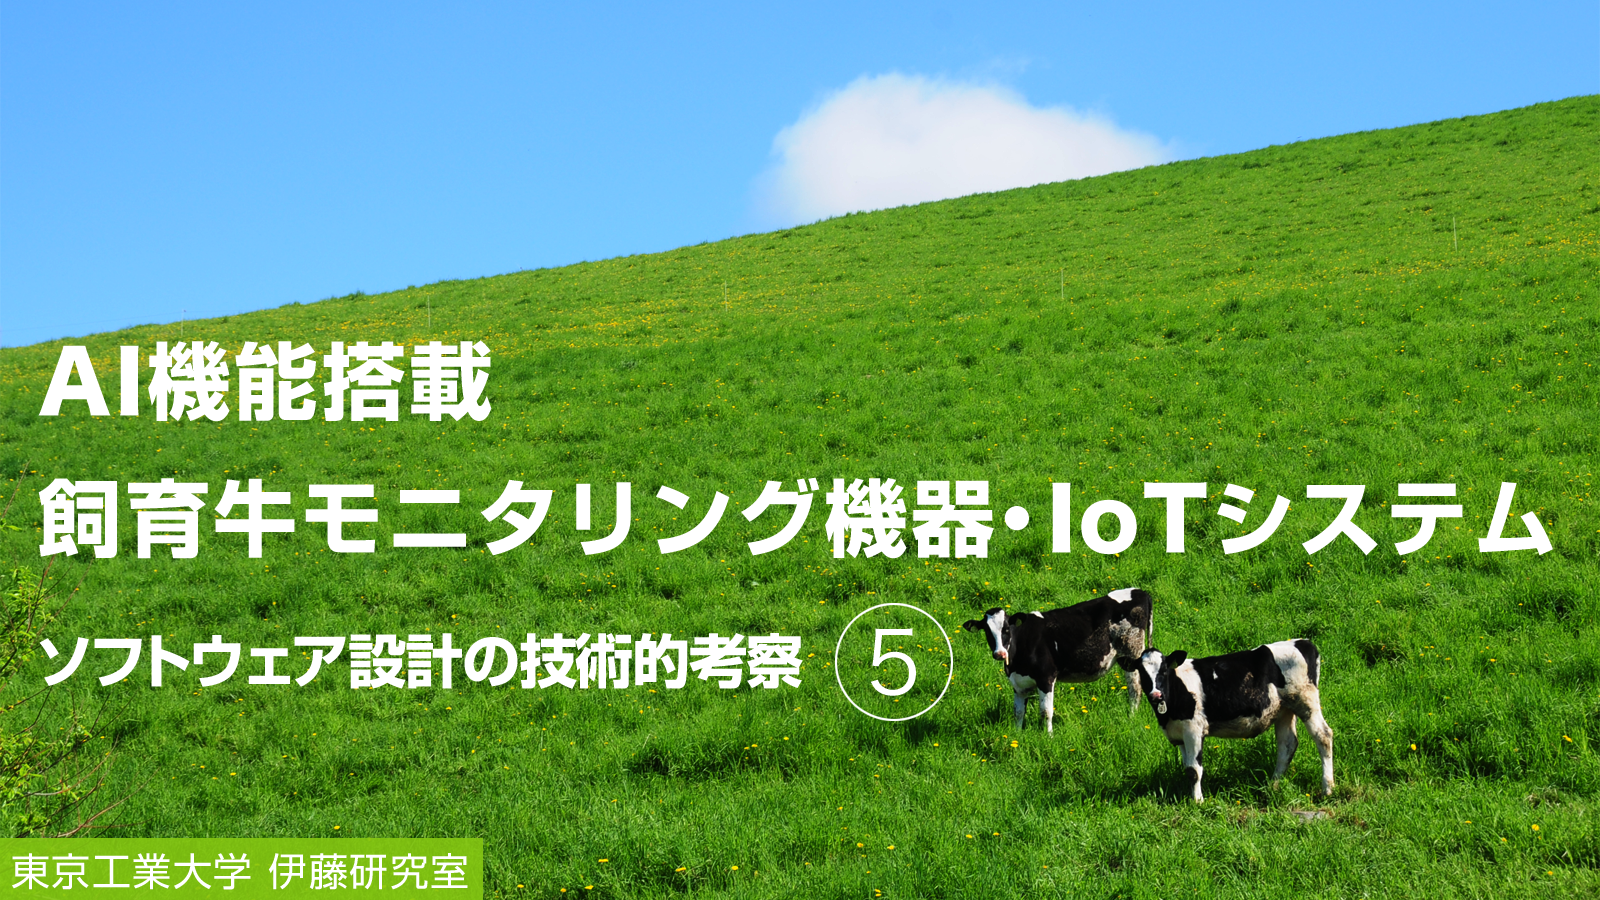 AI機能搭載 飼育牛モニタリング機器・IoTシステム 本研究のソフトウェア設計の技術的考察（5）
～マーケットイン型ユーザインタフェースの開発～